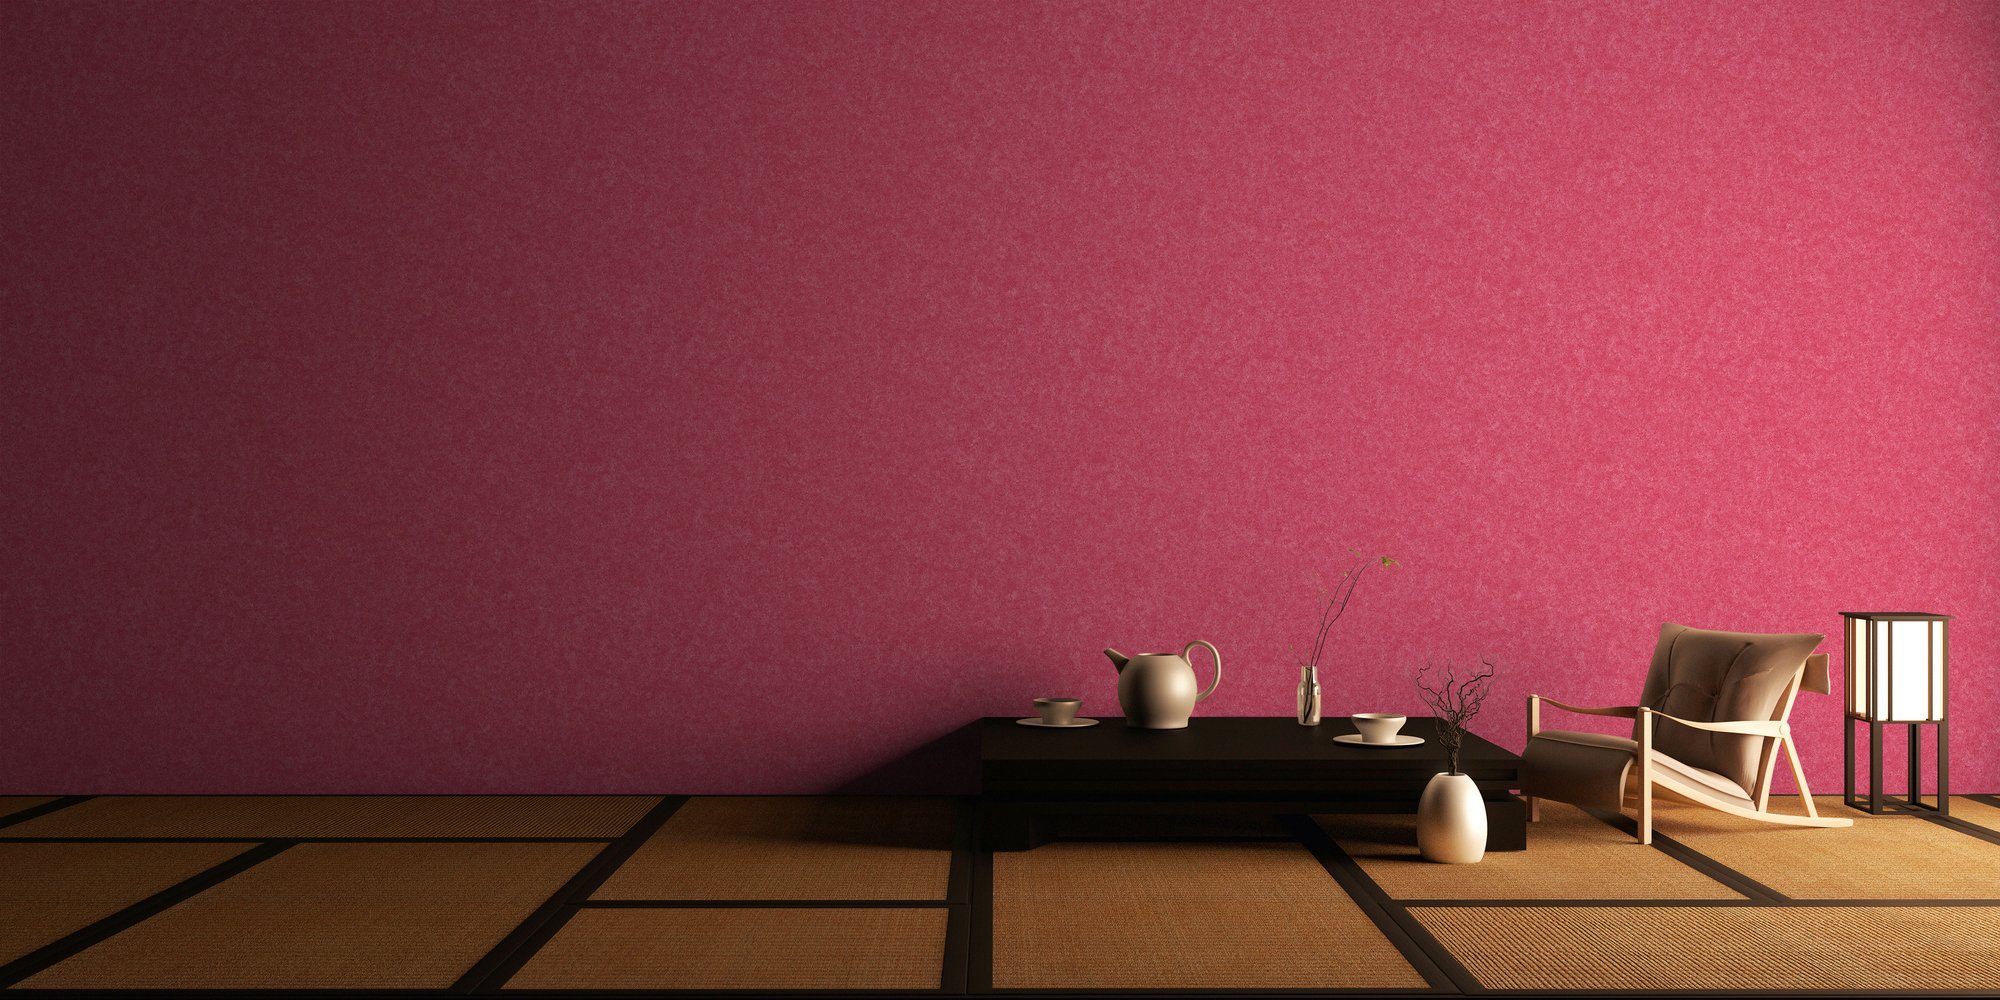 Tapete Vliestapete walls Einfarbig Metropolitan Stories, unifarben, Mio Tokio, pink Uni einfarbig, living